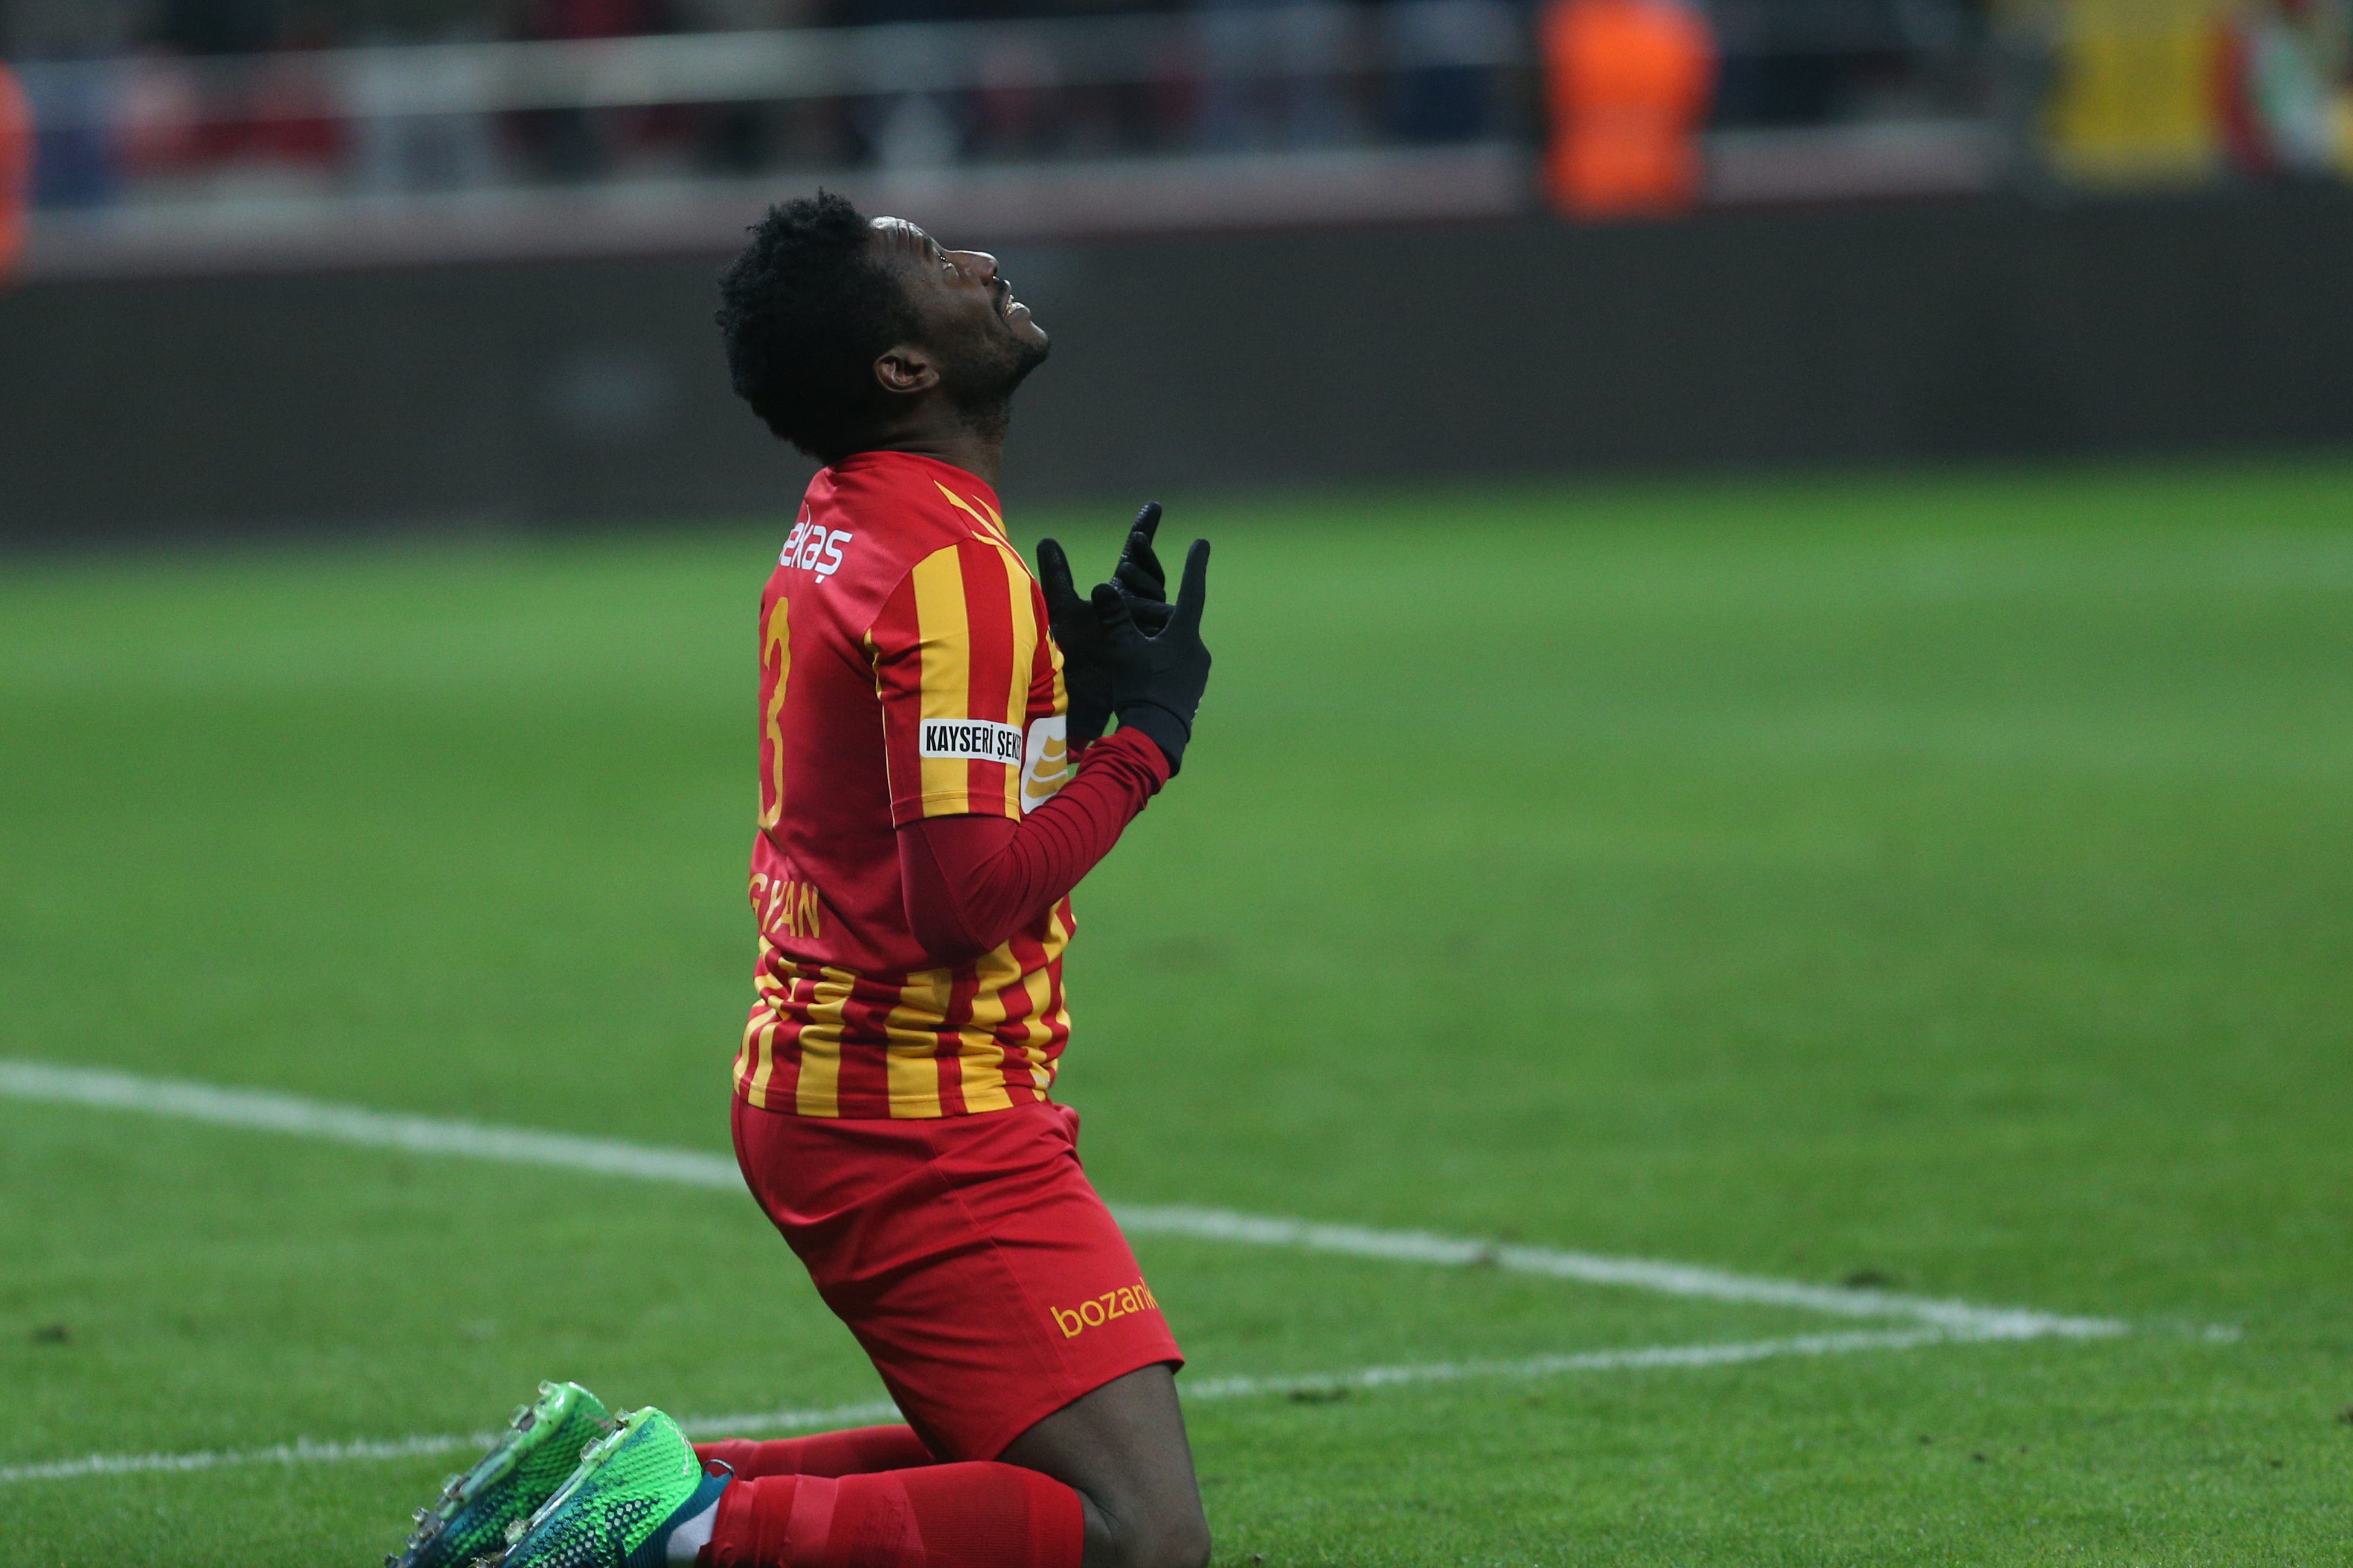 Ghana's Asamoah Gyan ends goal drought with brace in Kayserispor win | Goal.com Ghana